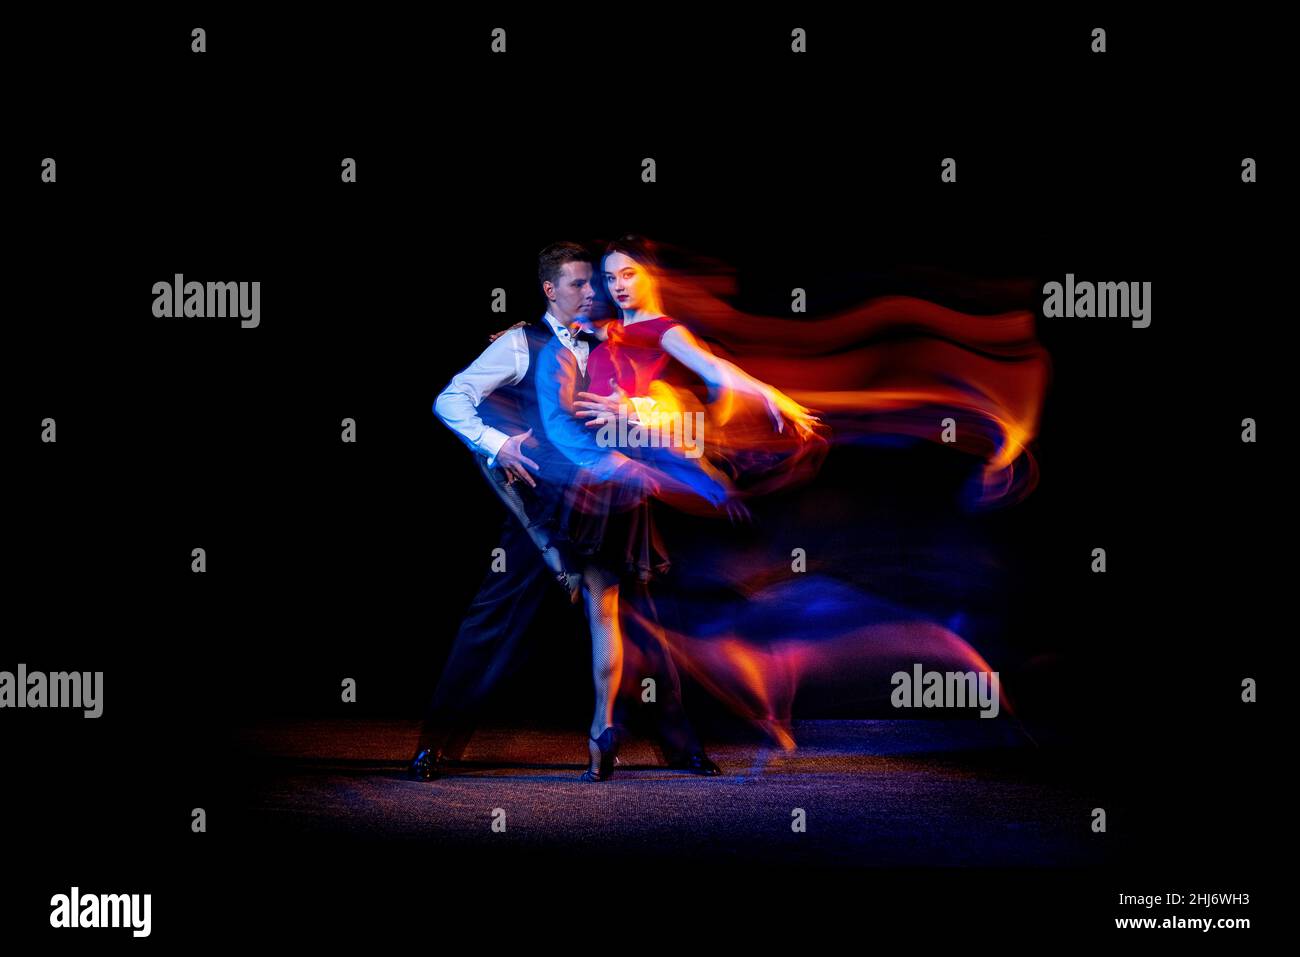 Ritratto dinamico di giovani ballerini da ballo tango argentino isolato su sfondo scuro con luce mista al neon. Foto Stock